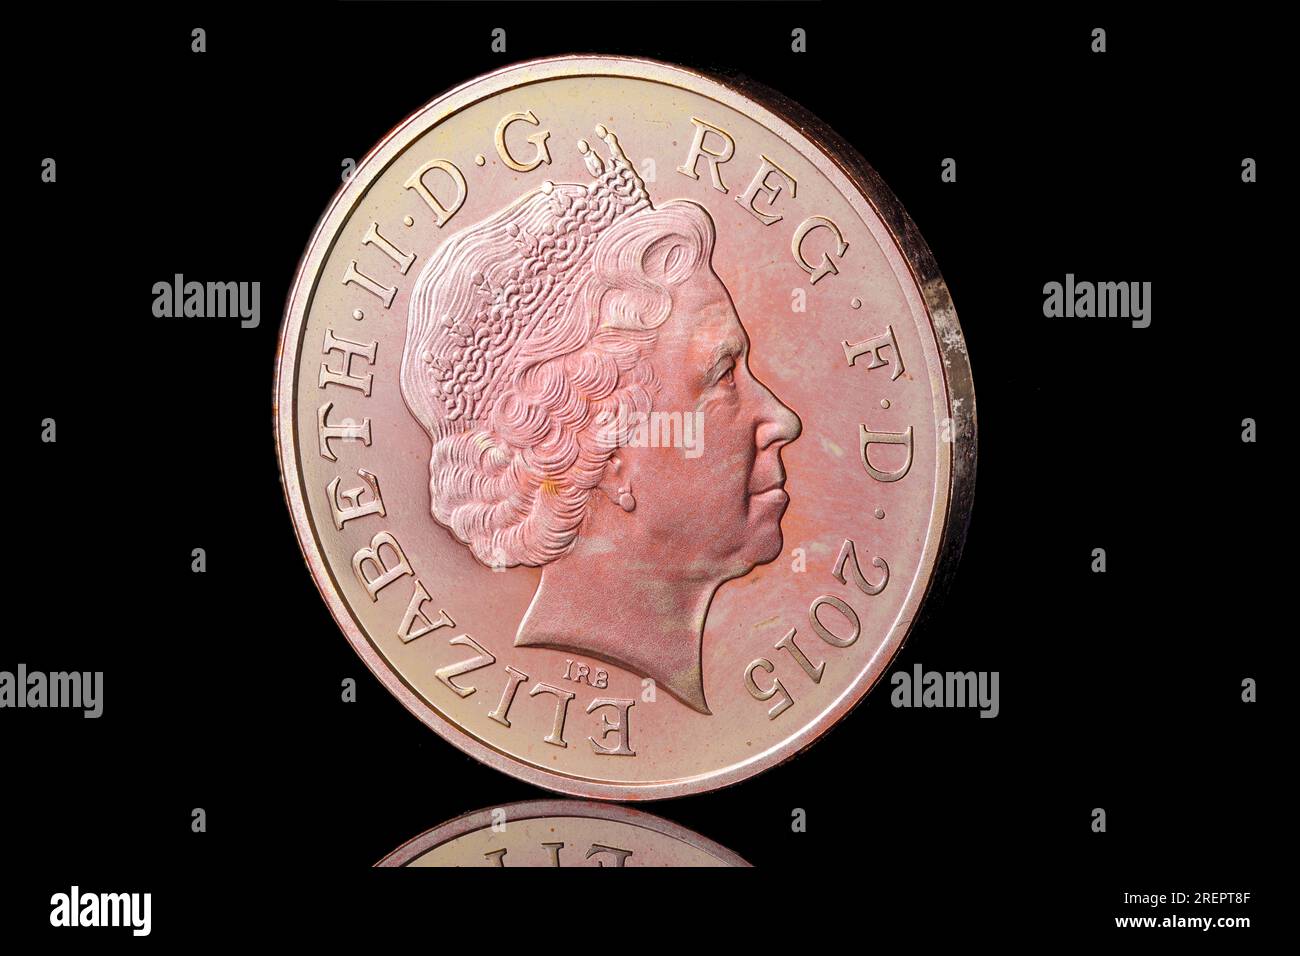 2015 2 pence avec le 4e portrait de la reine Elizabeth II par Ian Rank Broadley Banque D'Images